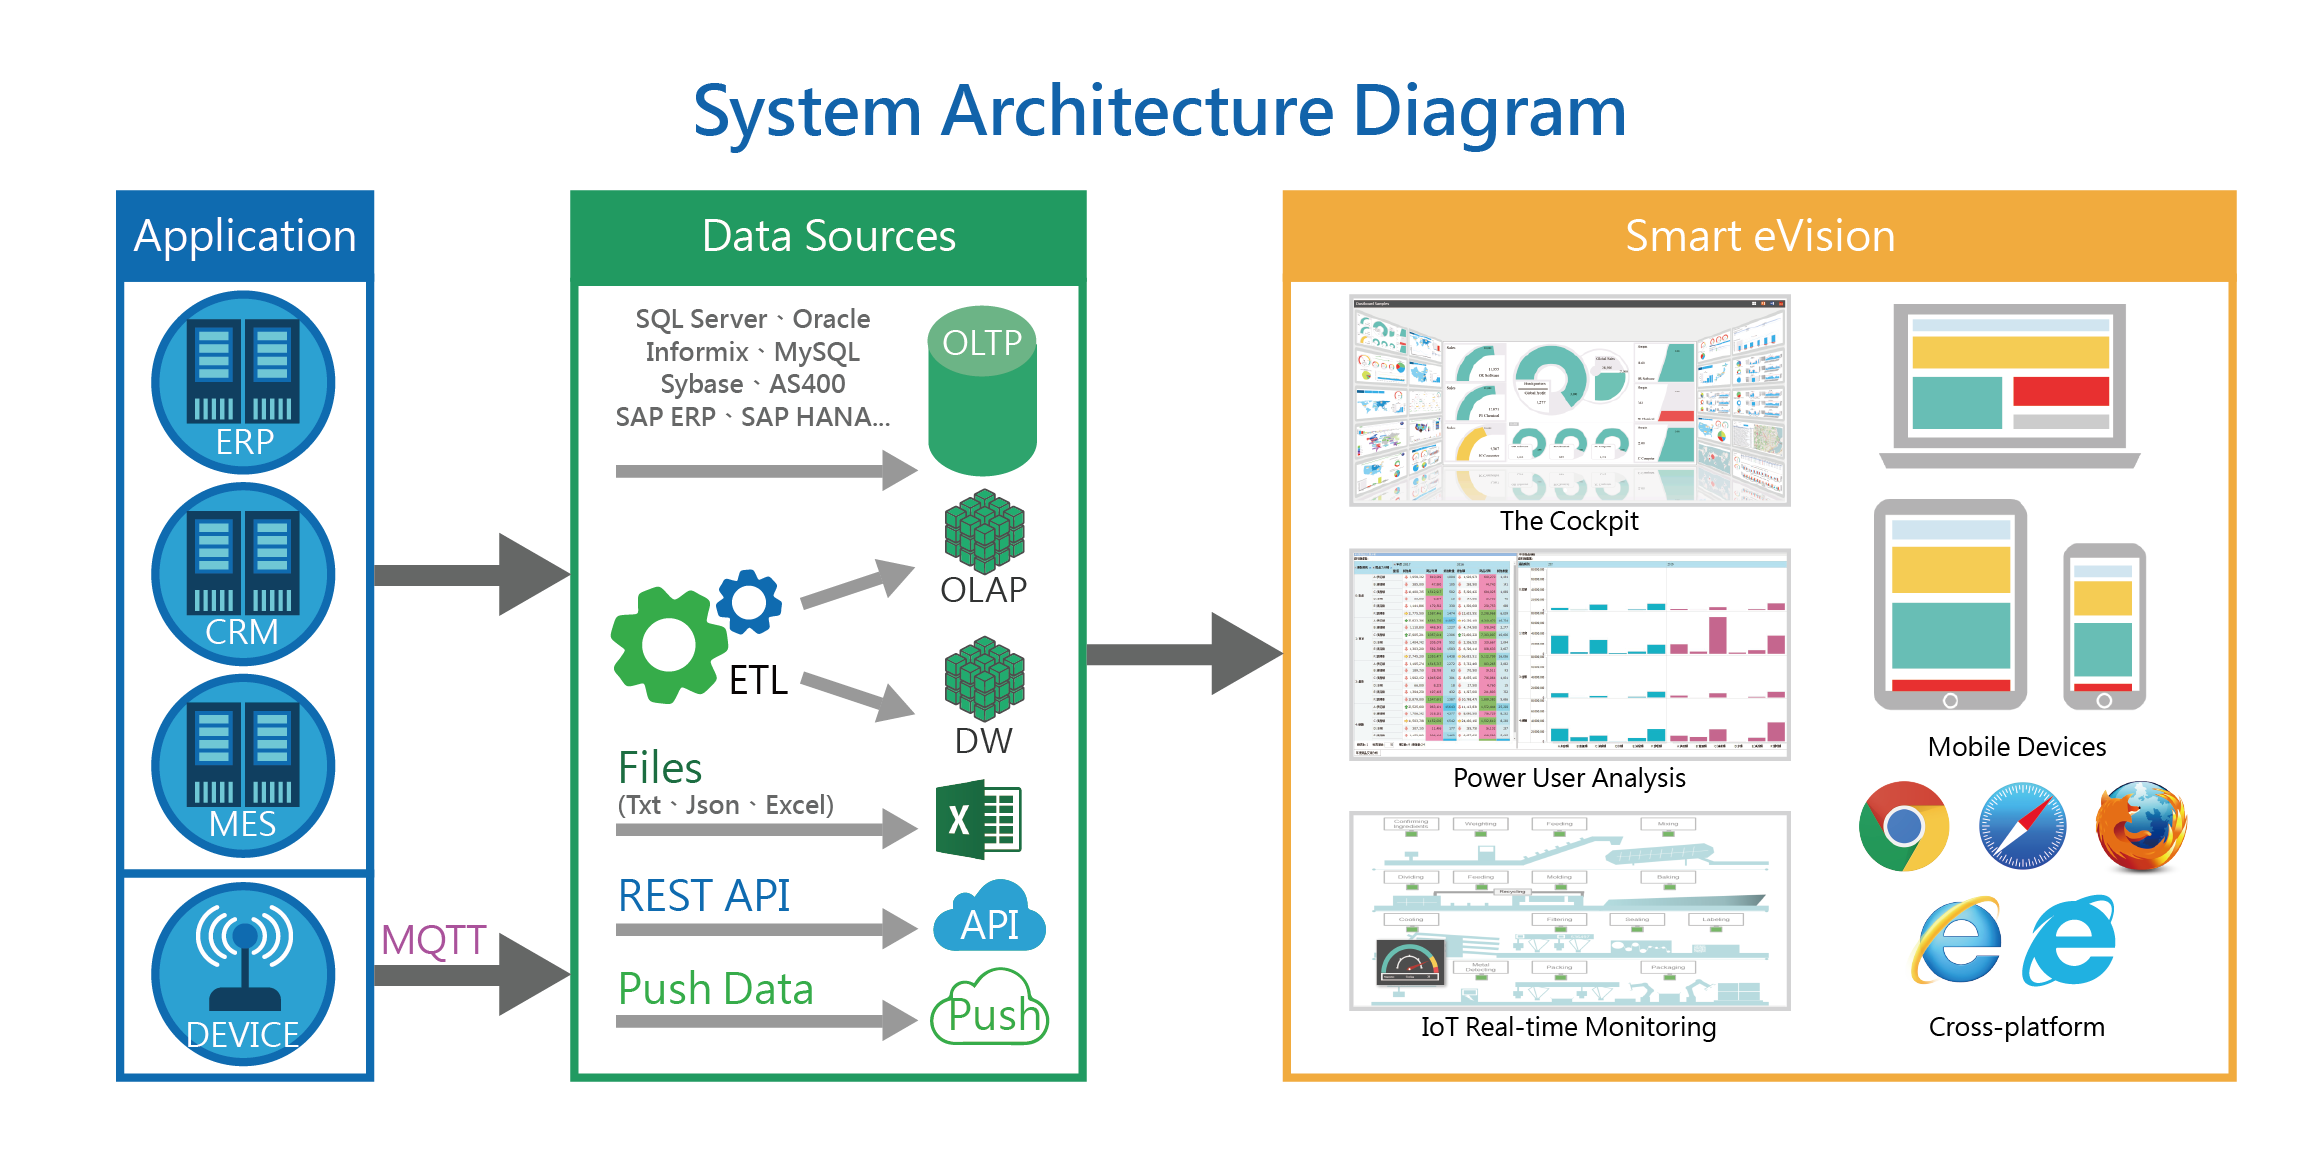 System Architecture，erp,crm,scm,mes,Data Sources